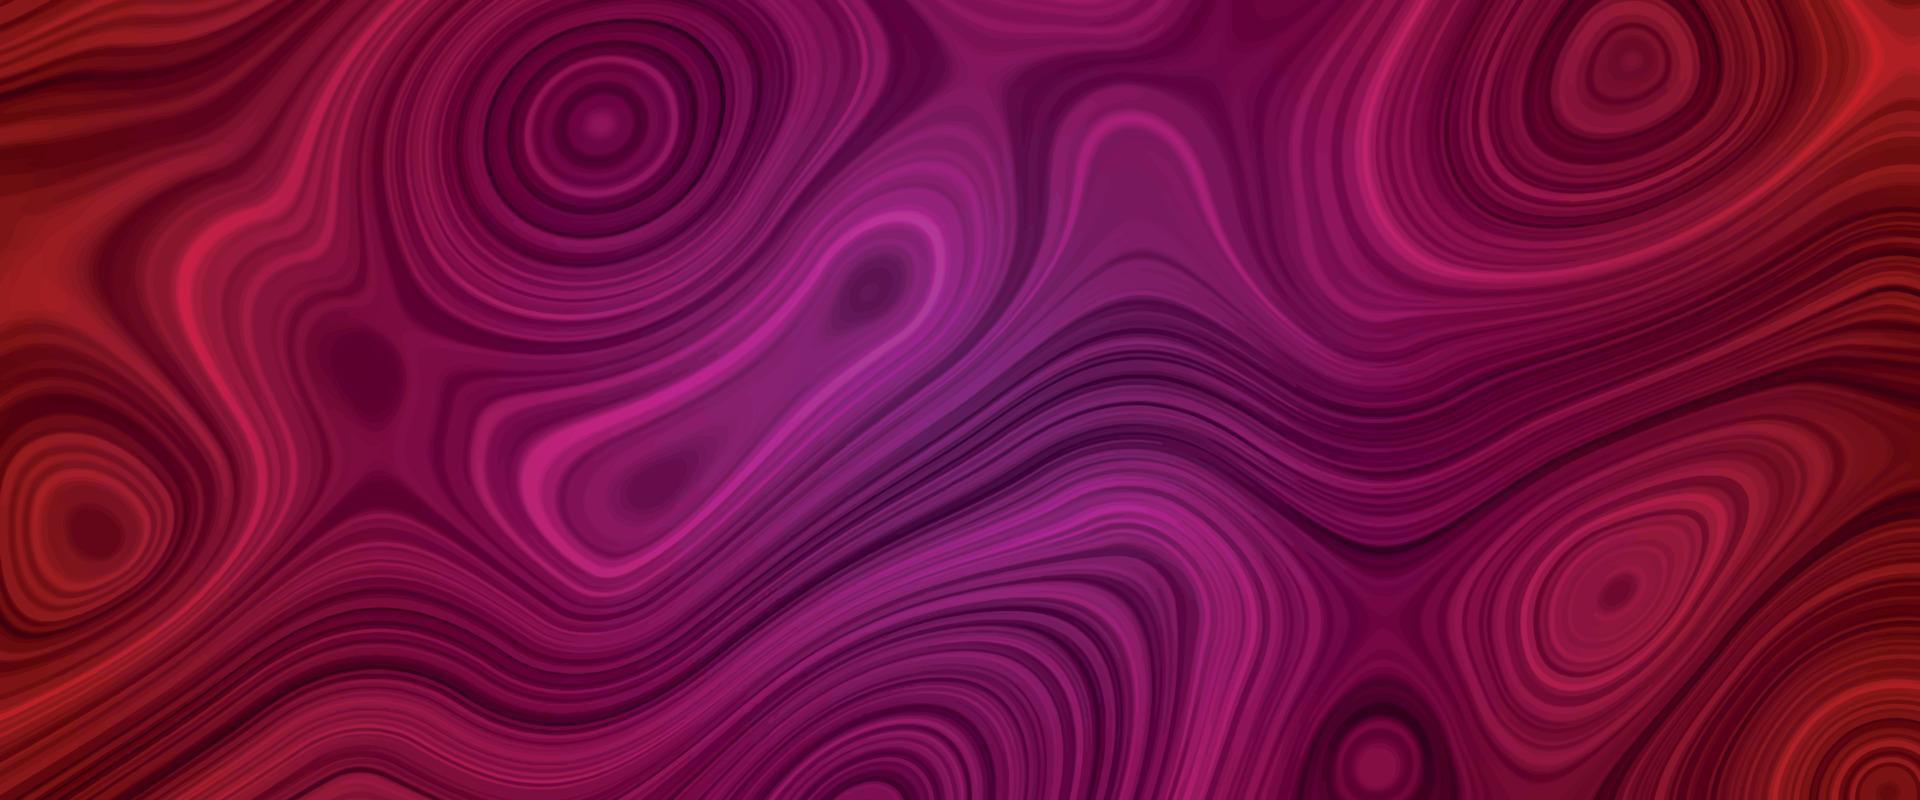 roze, rood satijn vloeistof achtergrond. digitaal kunst abstract patroon. abstract vloeistof metaal detailopname ontwerp. glad elegant zwart satijn textuur. luxueus marmeren achtergrond ontwerp. vector